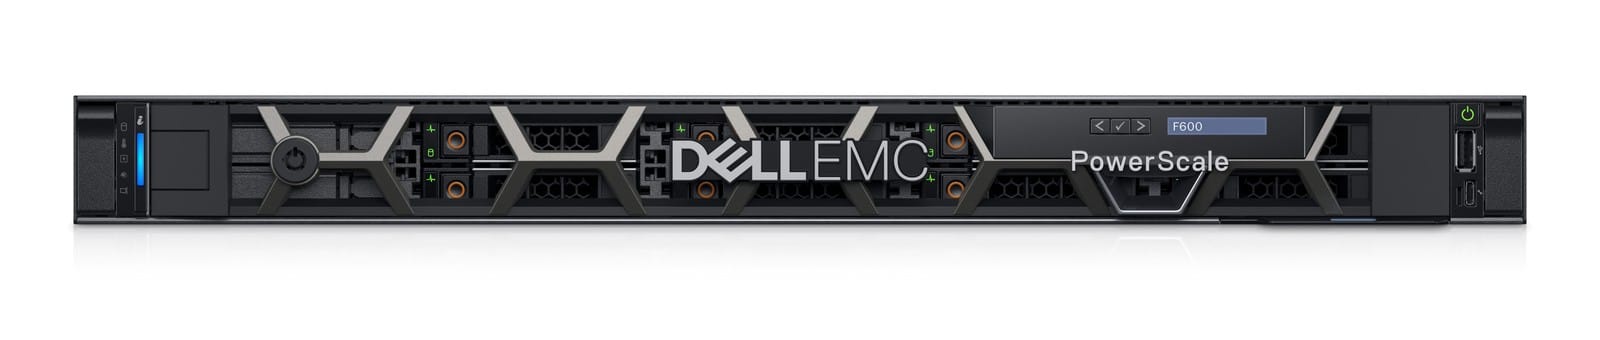 Dell giới thiệu bộ lưu trữ PowerScale, tích hợp những công nghệ hàng đầu cho phần cứng máy chủ